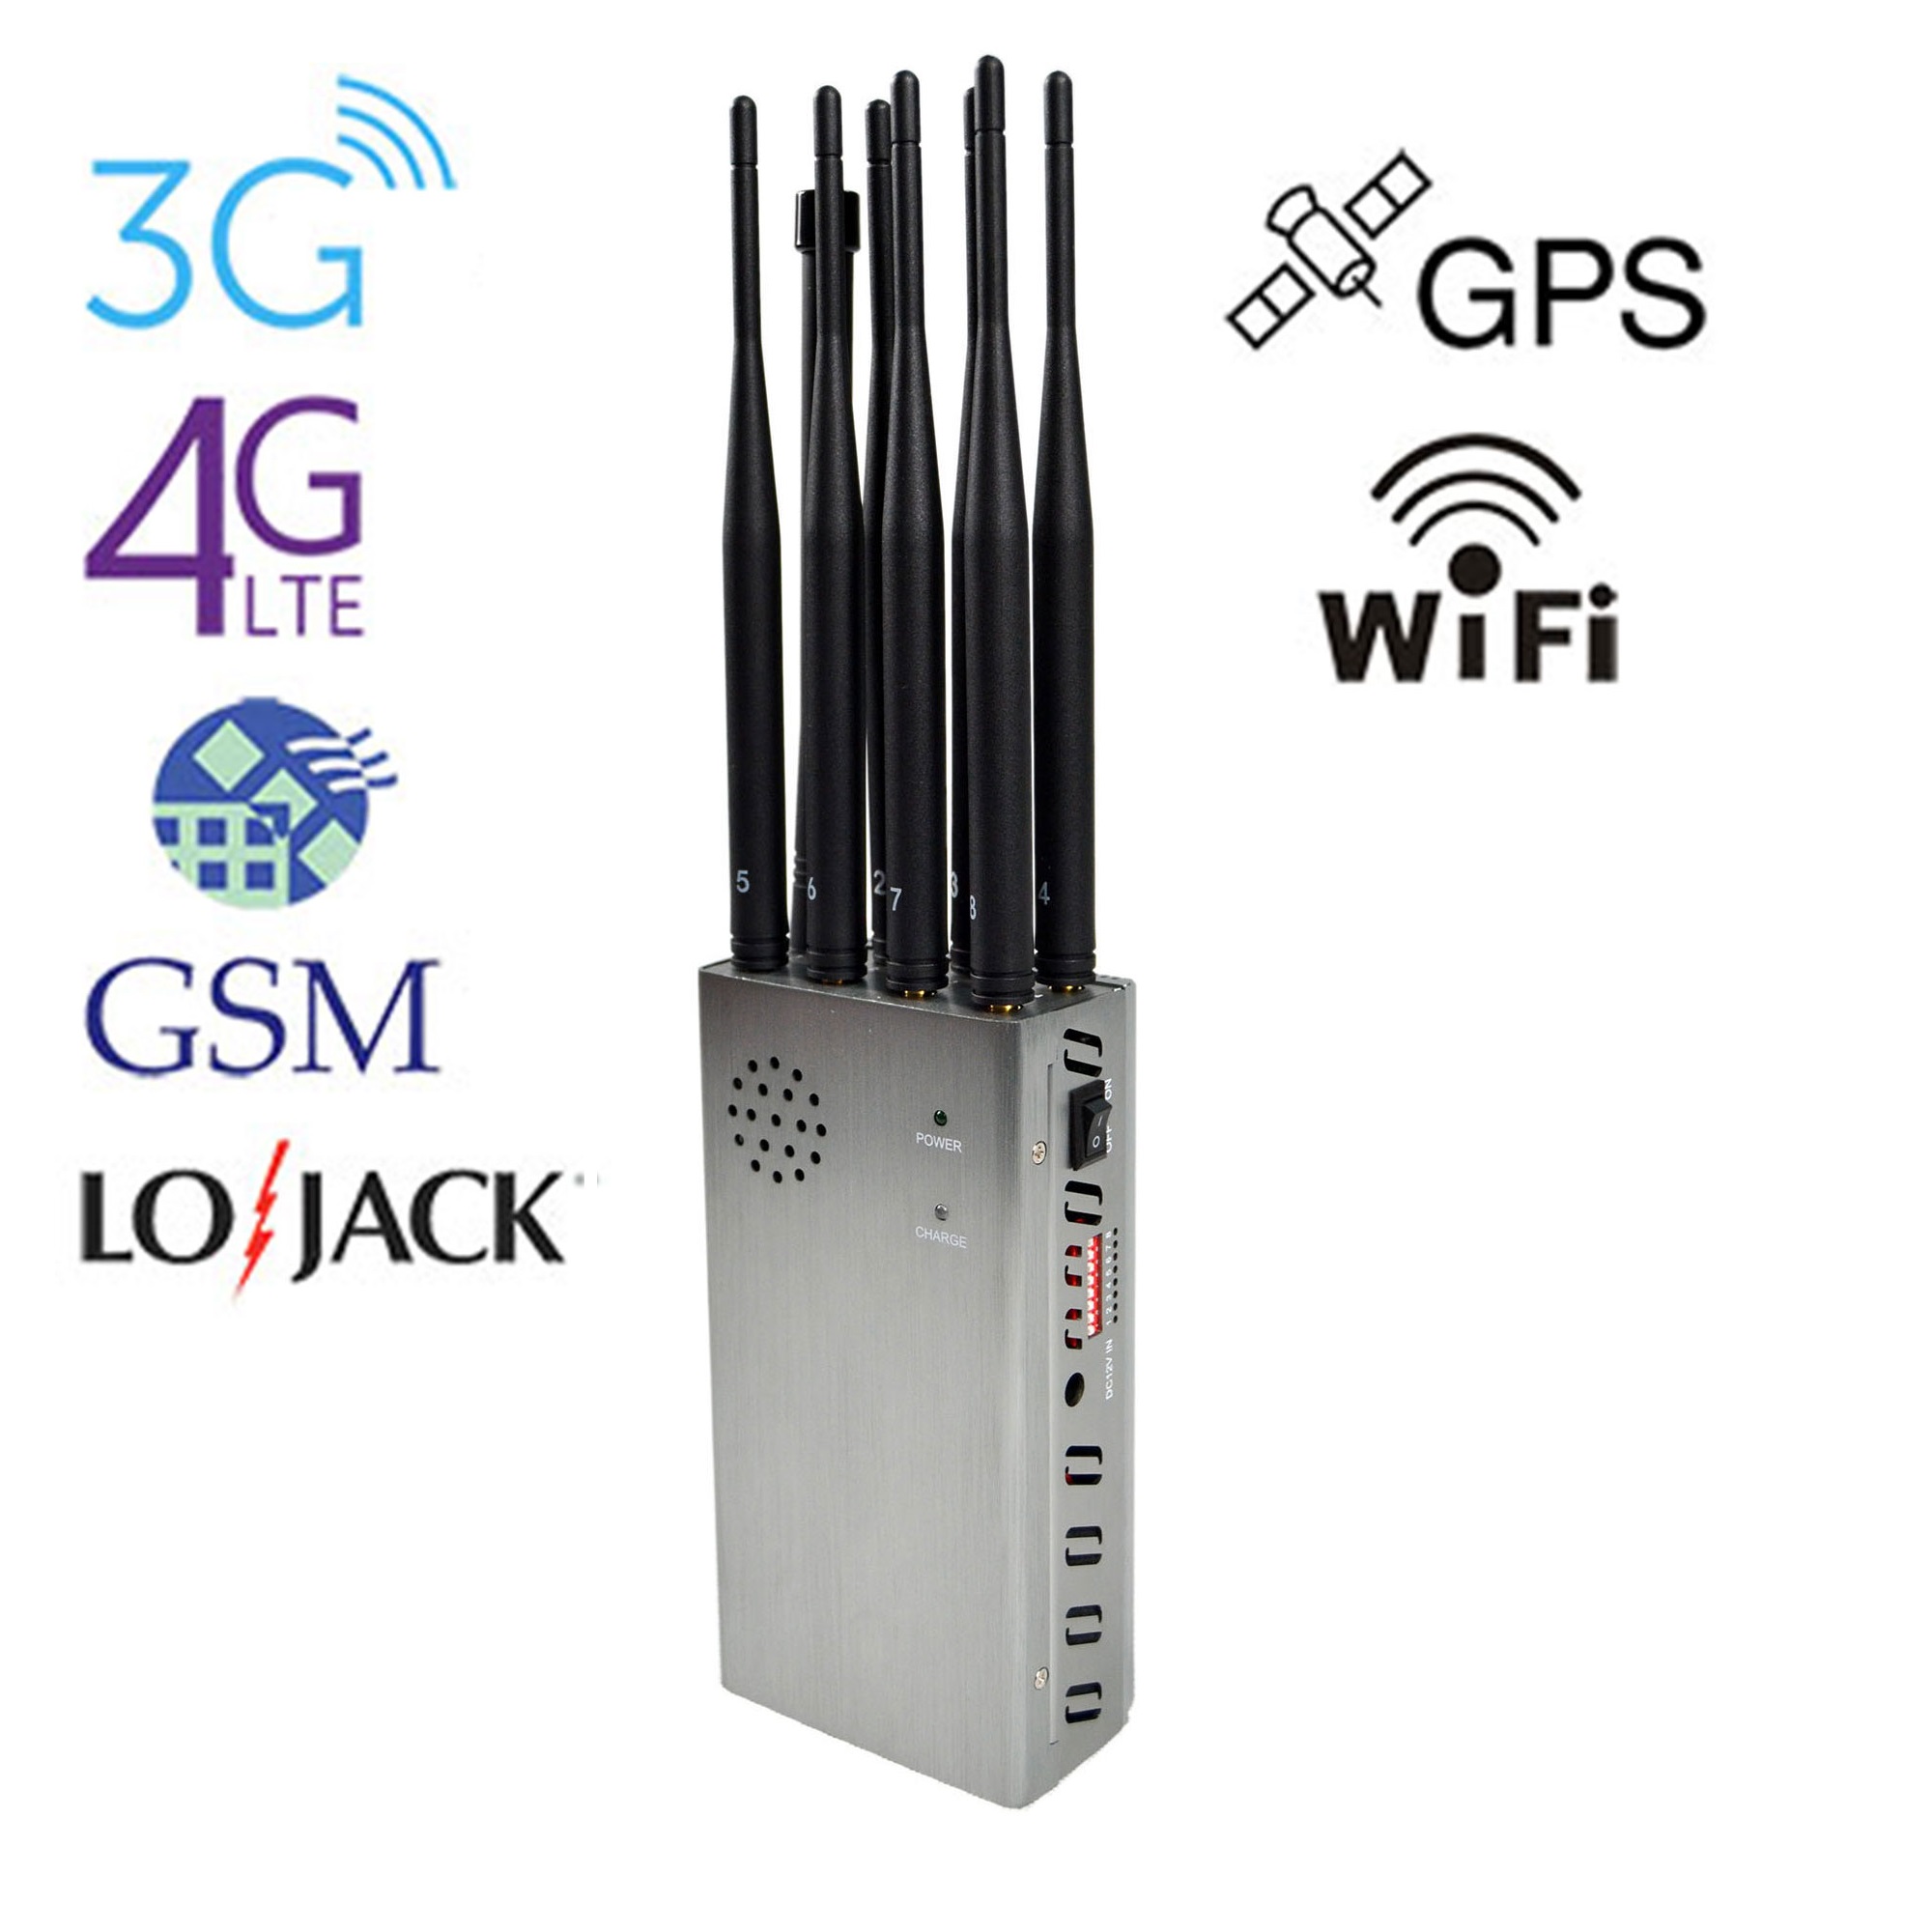 8 Antenne störsender für mobilfunk